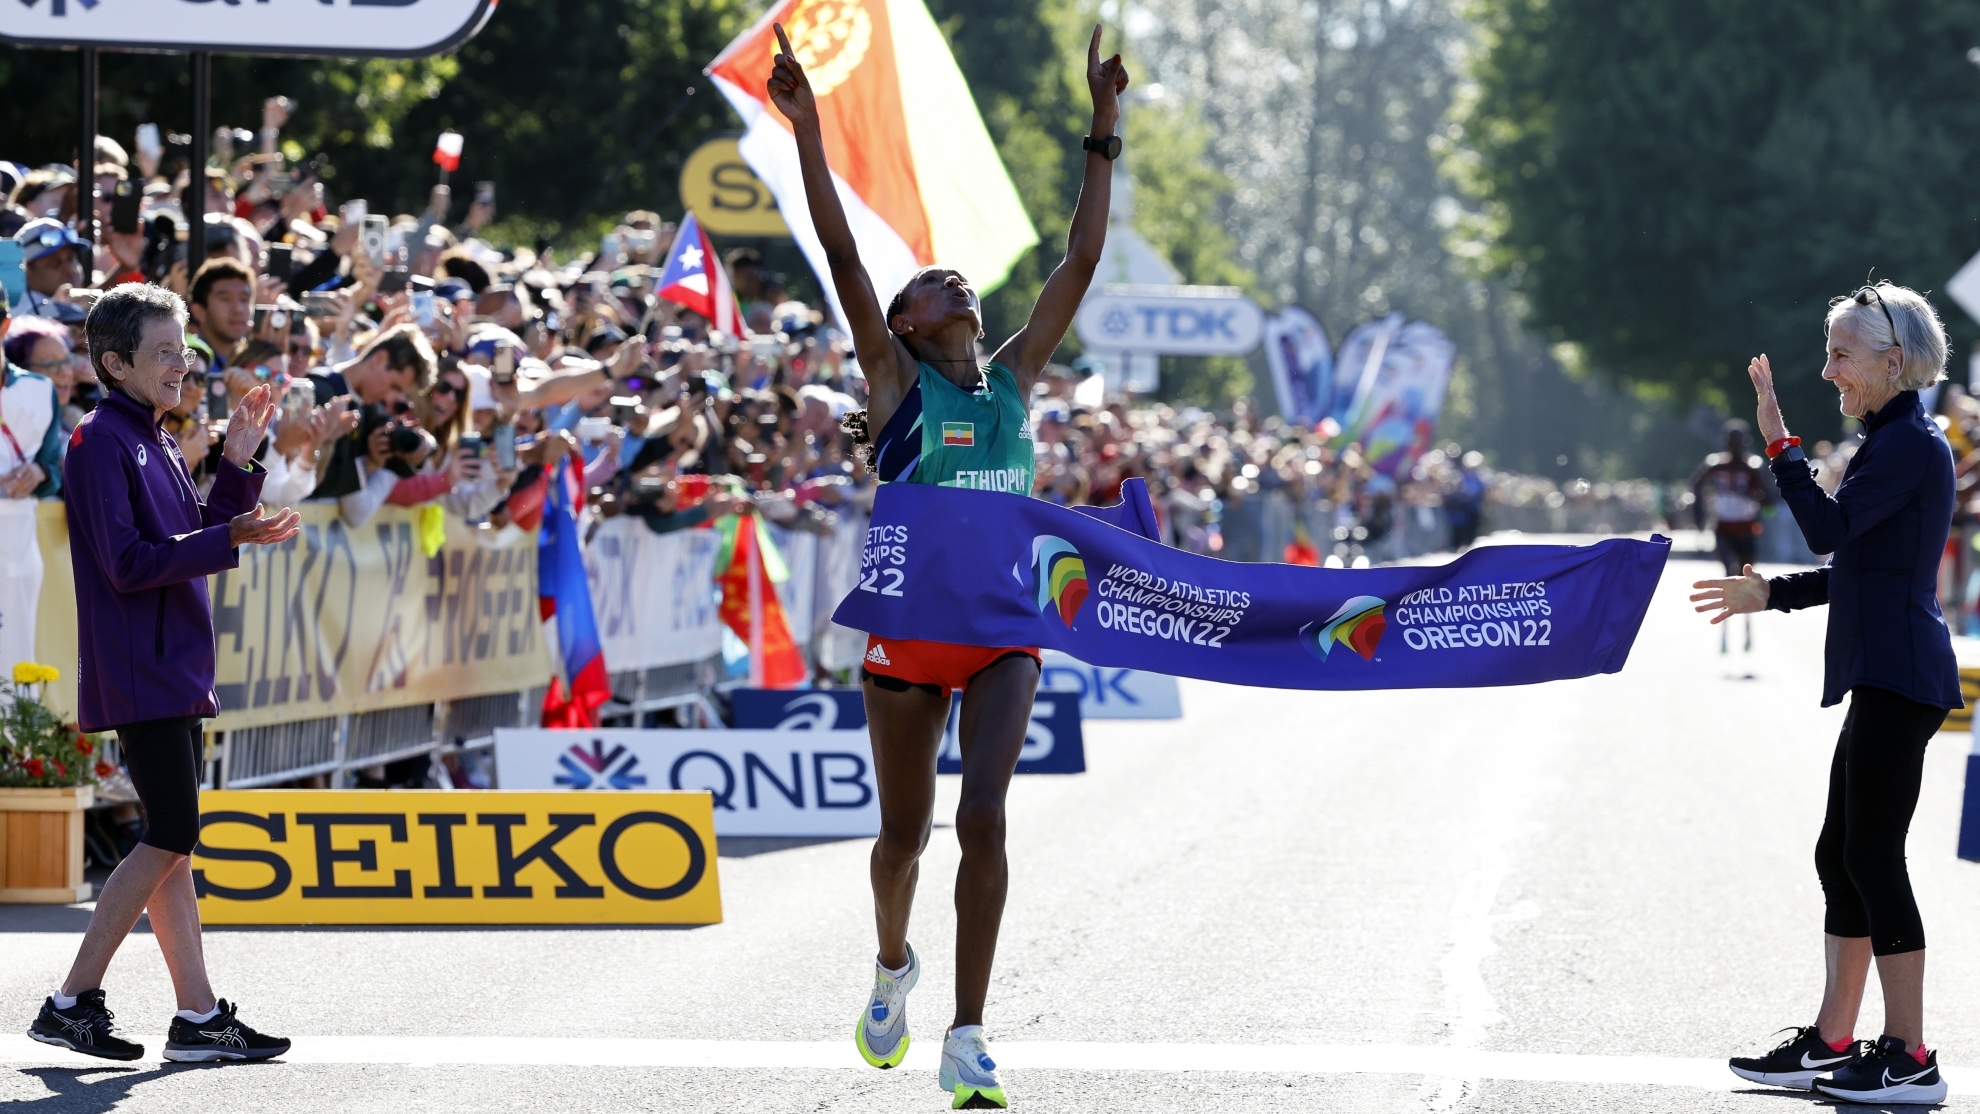 La etíope Gebreslase gana el maratón con récord de los campeonatos